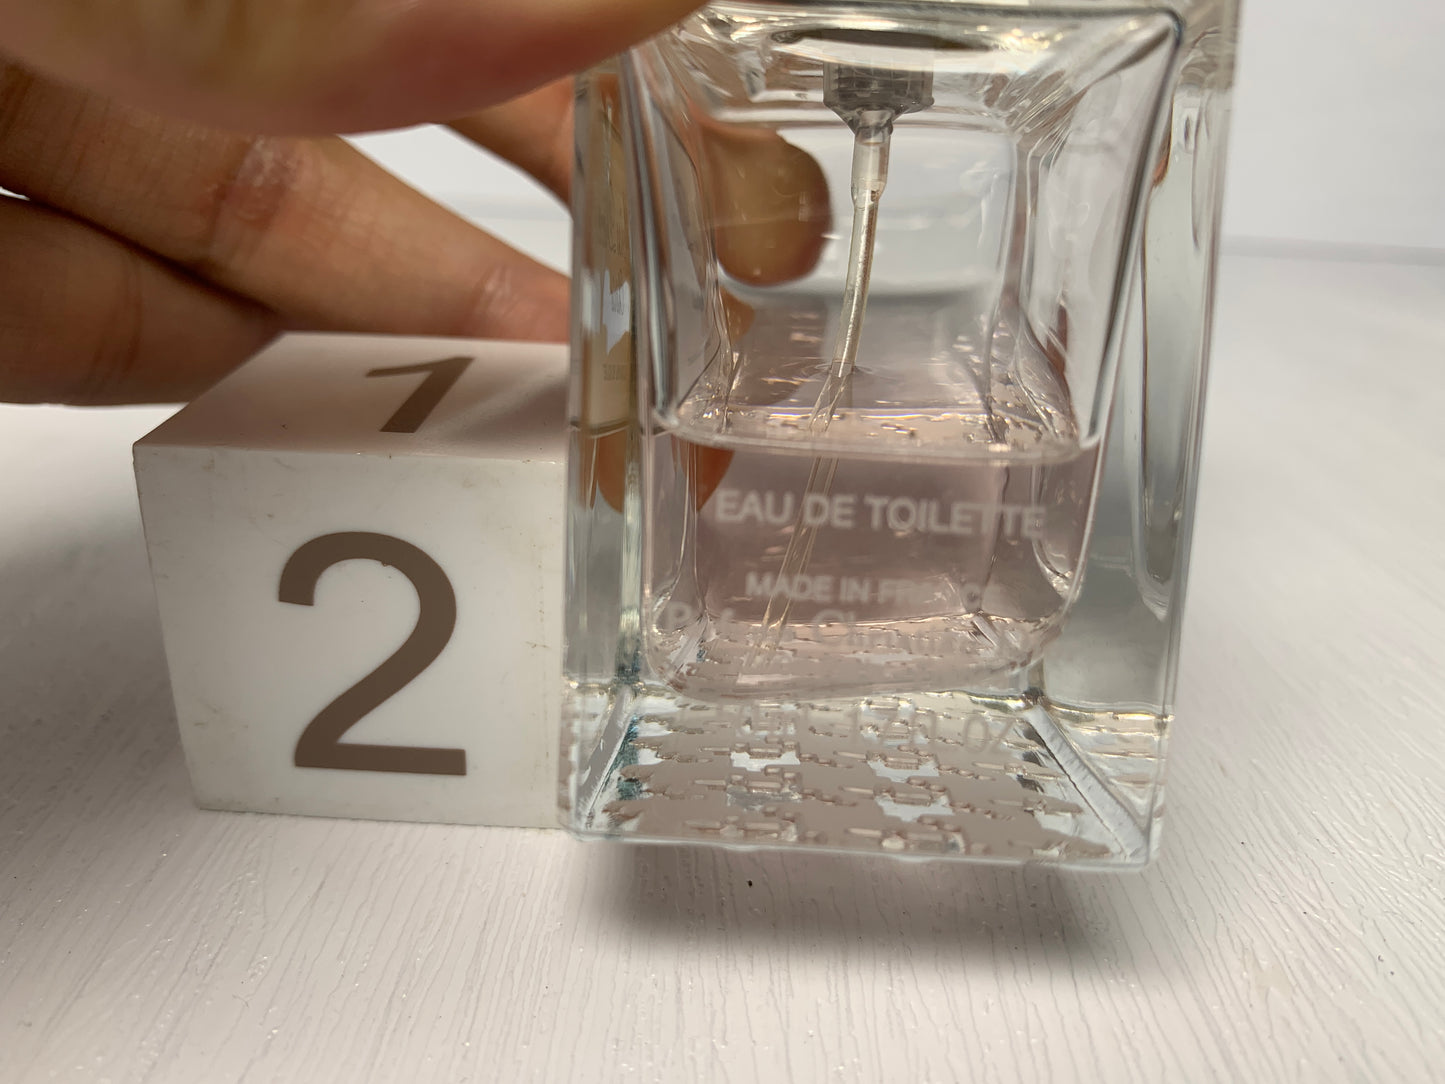 Rare Miss Dior Cherie   50ml 1.7 oz EDT eau de toilette  Parfum Perfume - 6FEB22